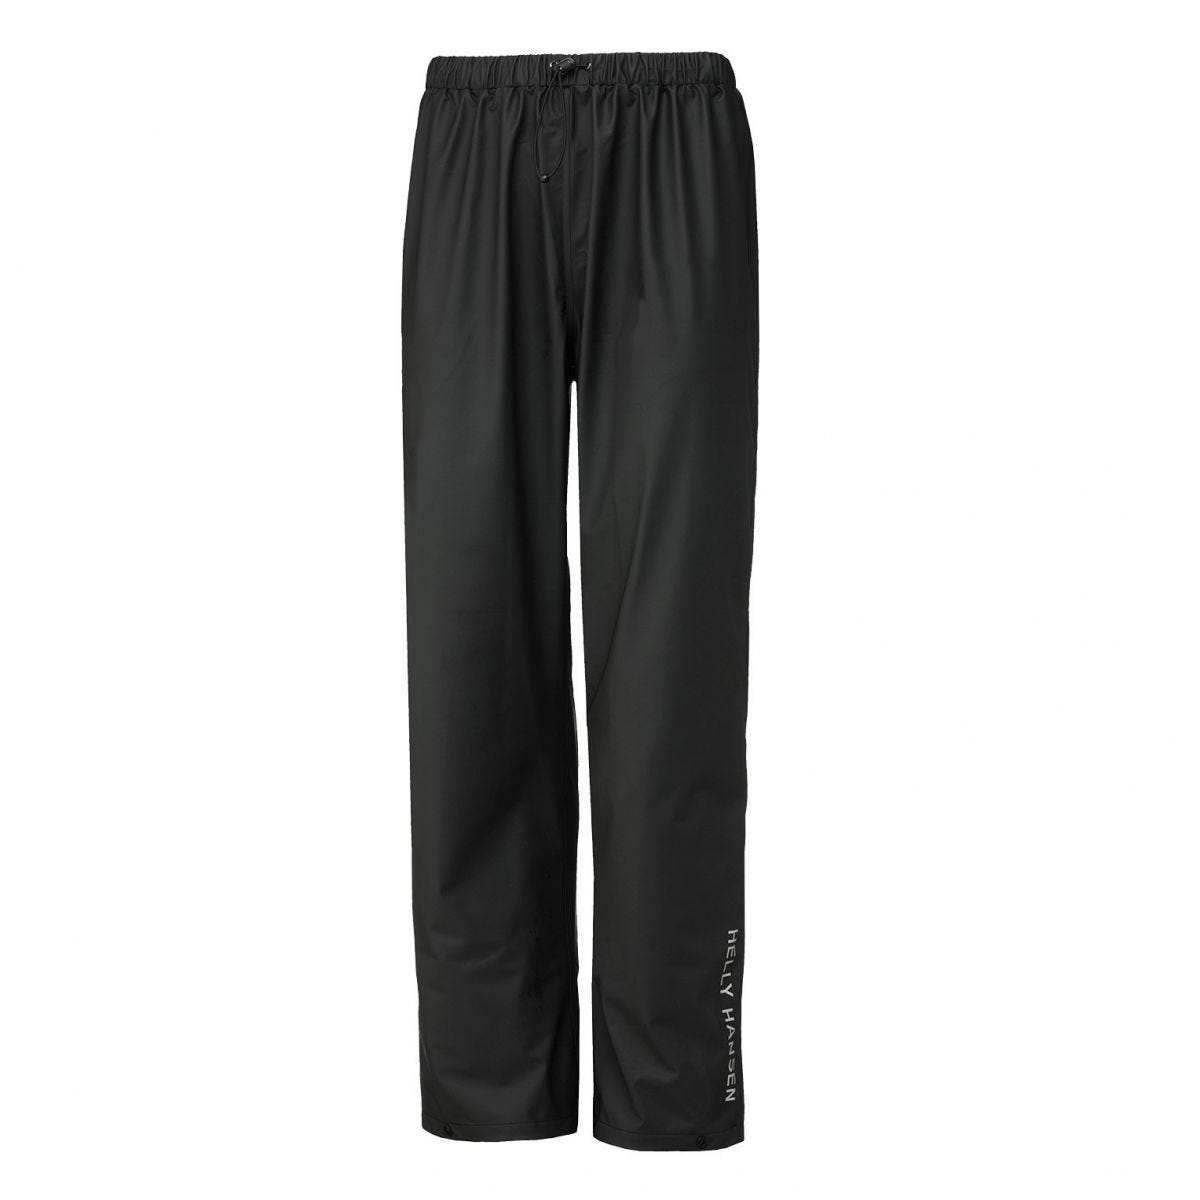 Pantalon de pluie imperméable Voss noir - Helly Hansen - Taille 3XL 0